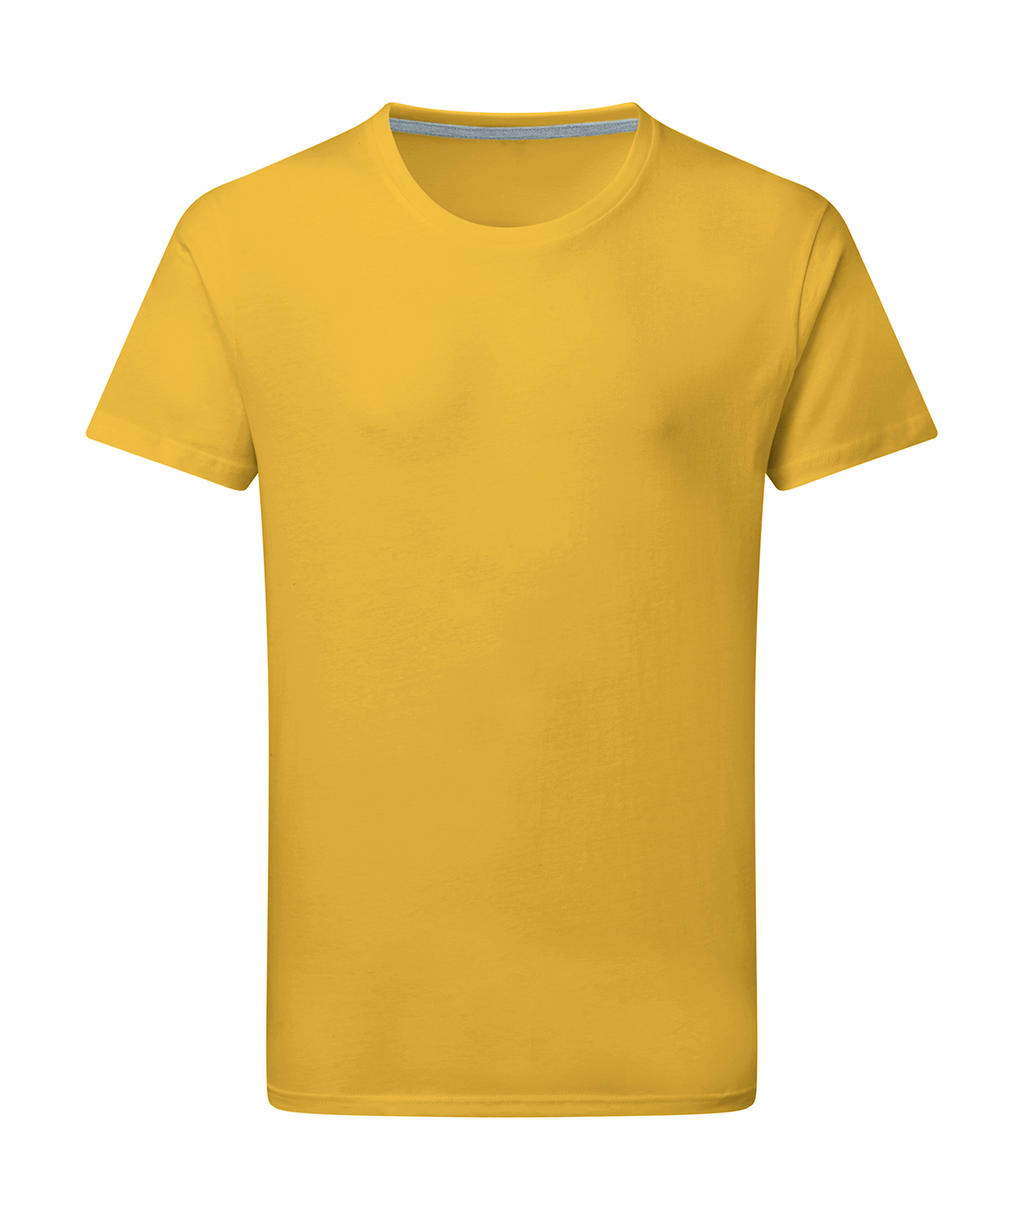 Dokonale potlačiteľné tričko bez štítku - sunflower